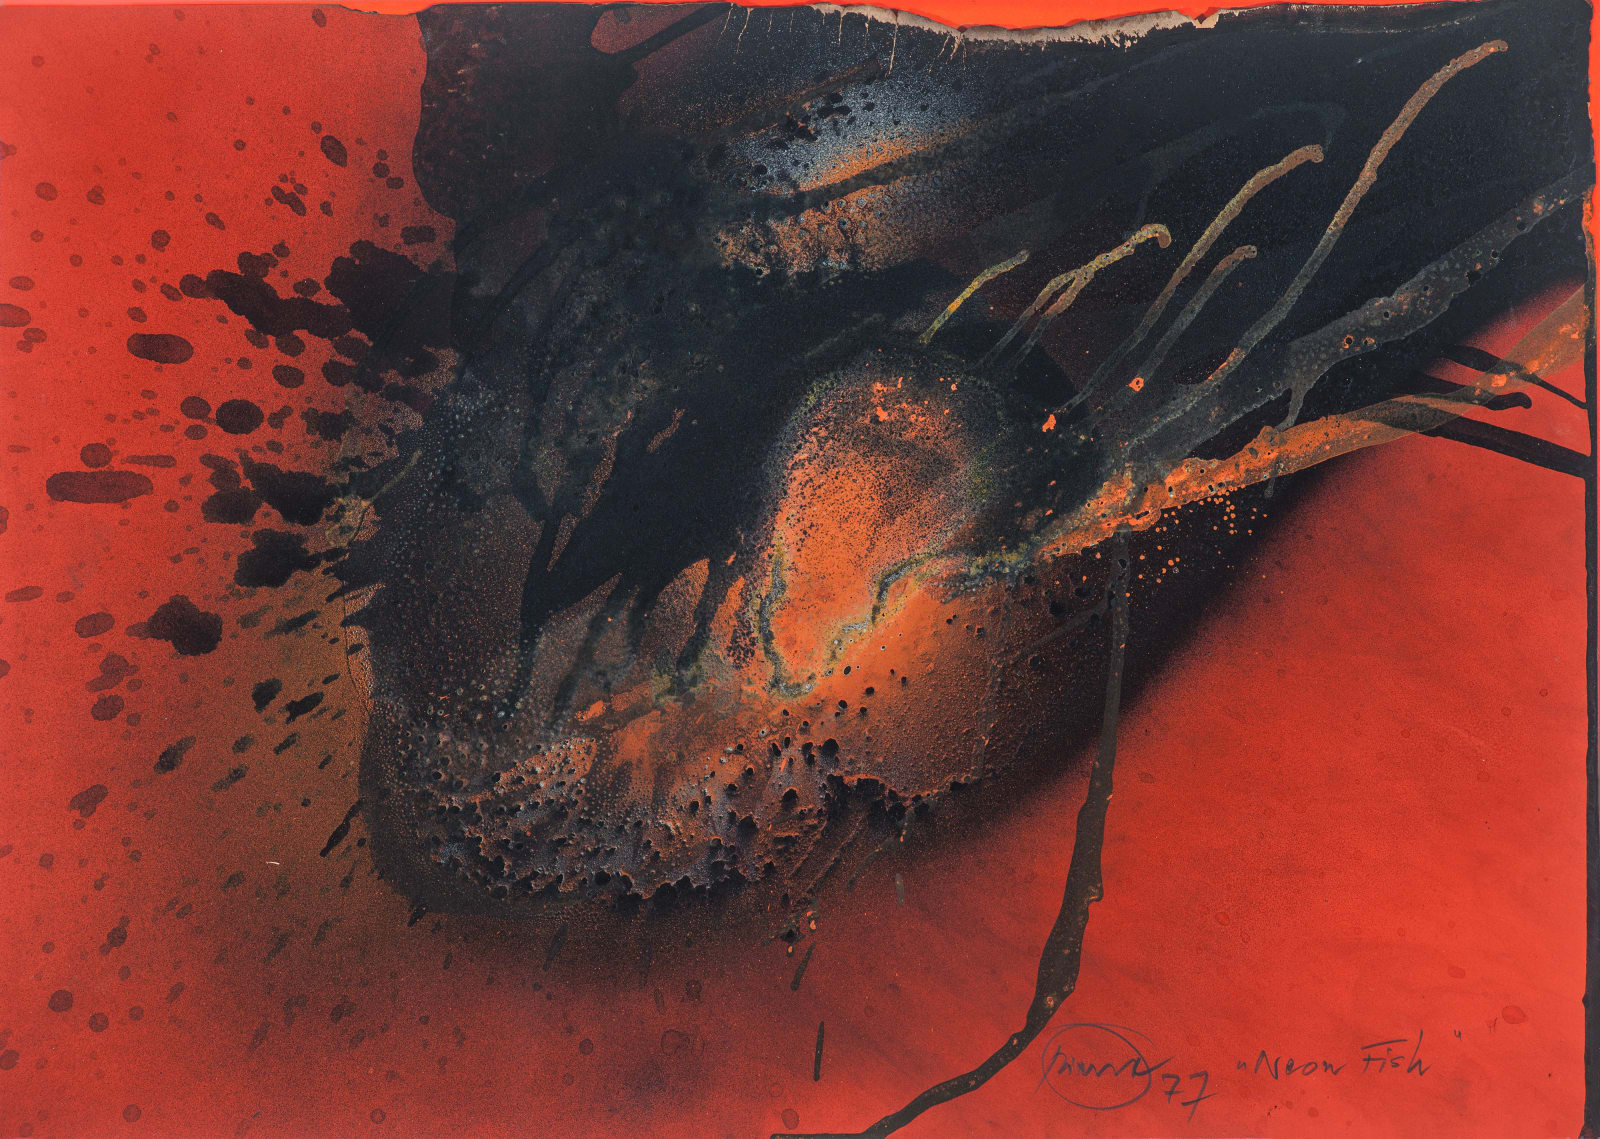 OTTO PIENE, Neonfish, 1977